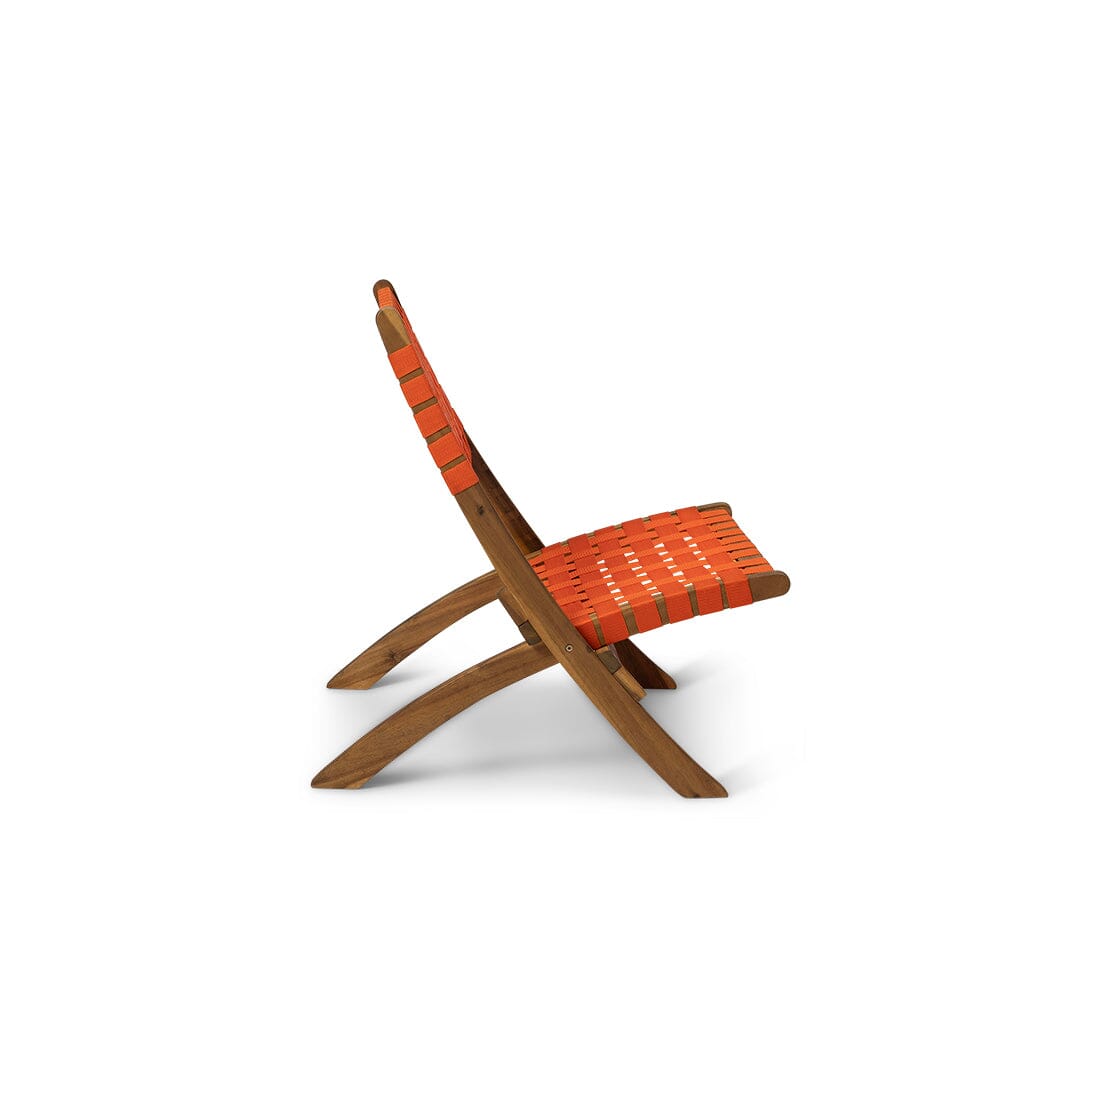 Kai Orange Beach Chair Sets